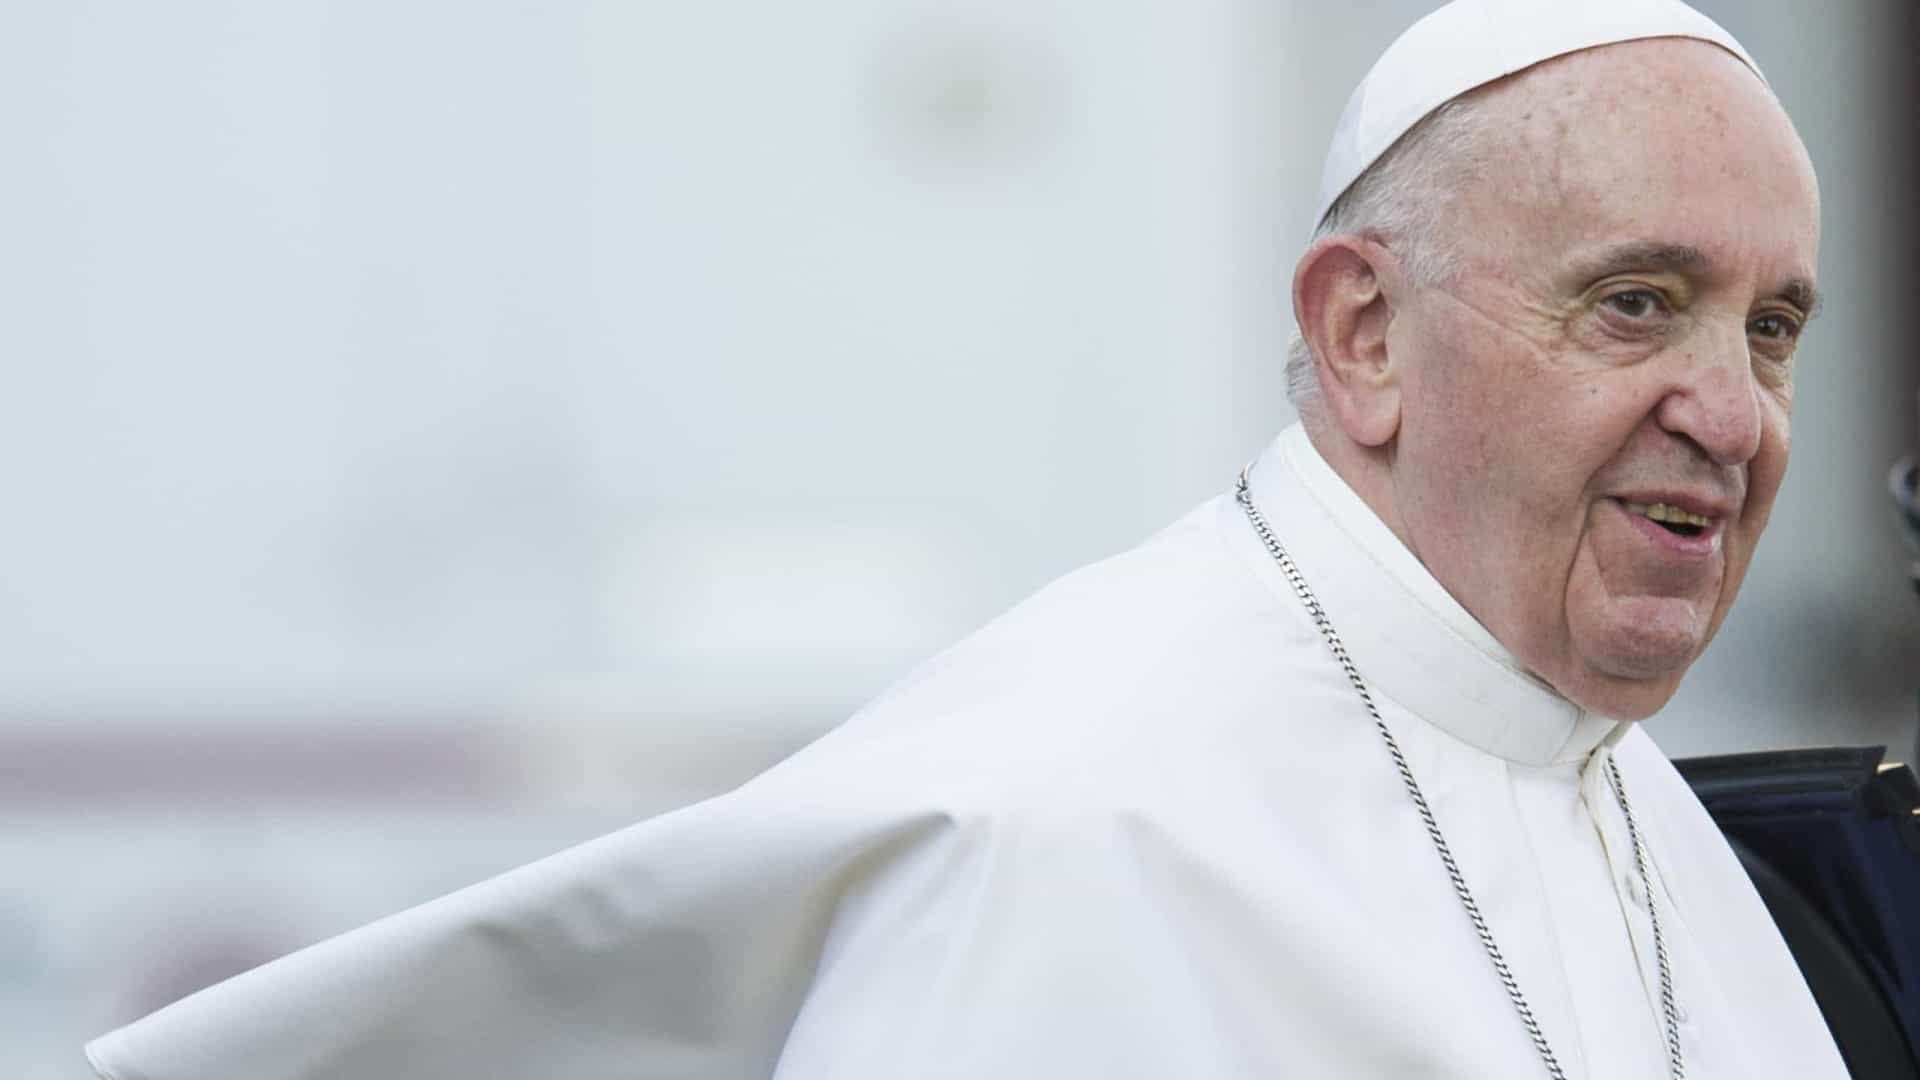 Papa lamenta cancelamento da viagem a África